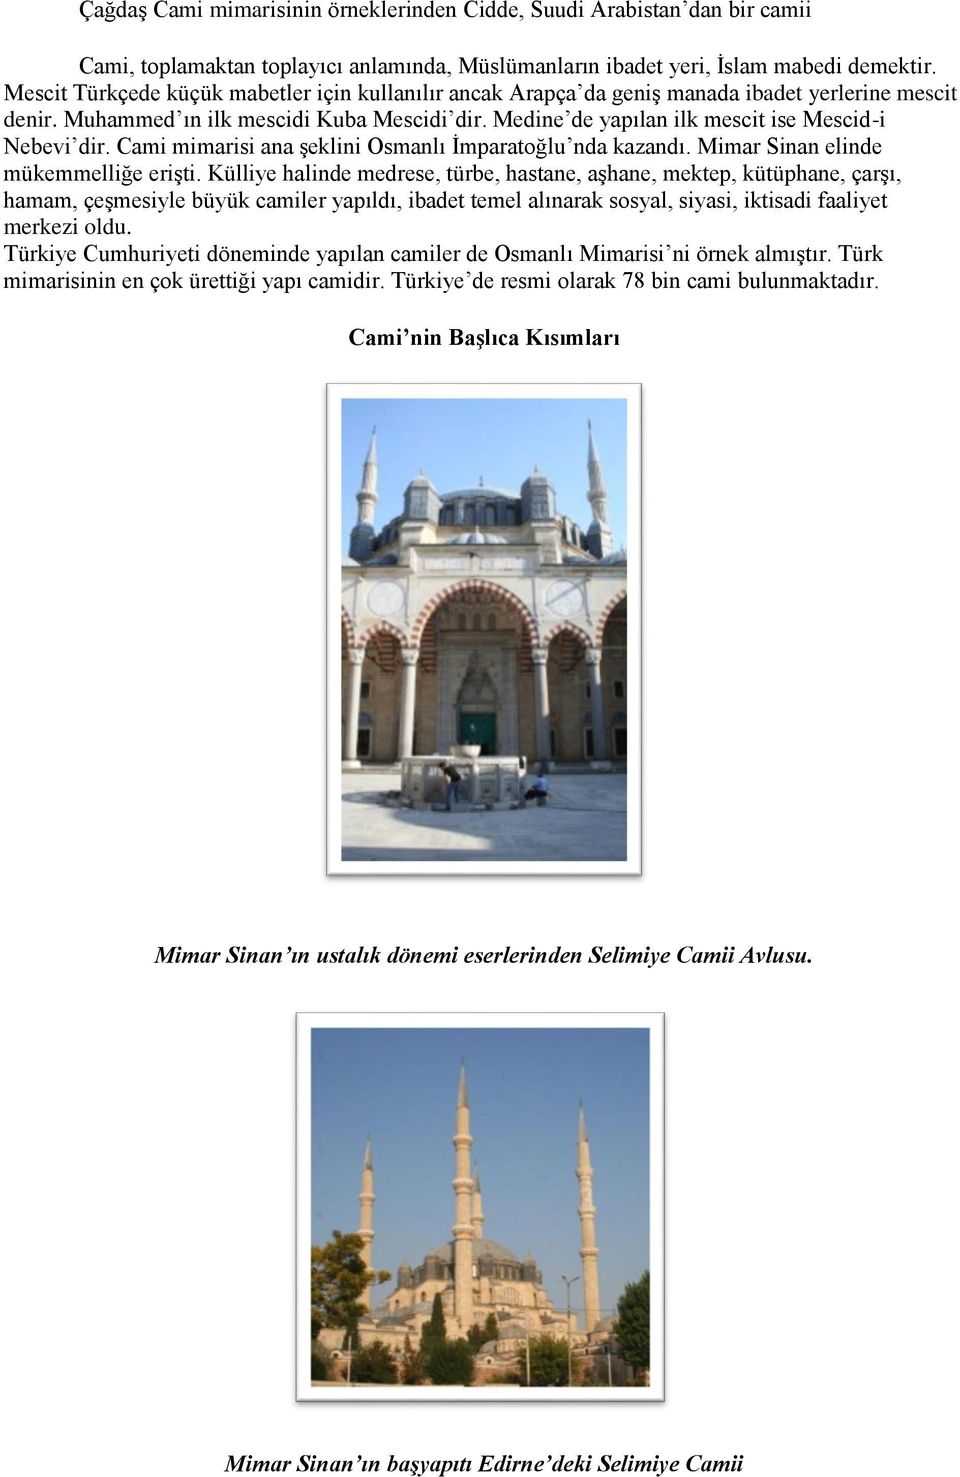 Medine de yapılan ilk mescit ise Mescid-i Nebevi dir. Cami mimarisi ana şeklini Osmanlı İmparatoğlu nda kazandı. Mimar Sinan elinde mükemmelliğe erişti.